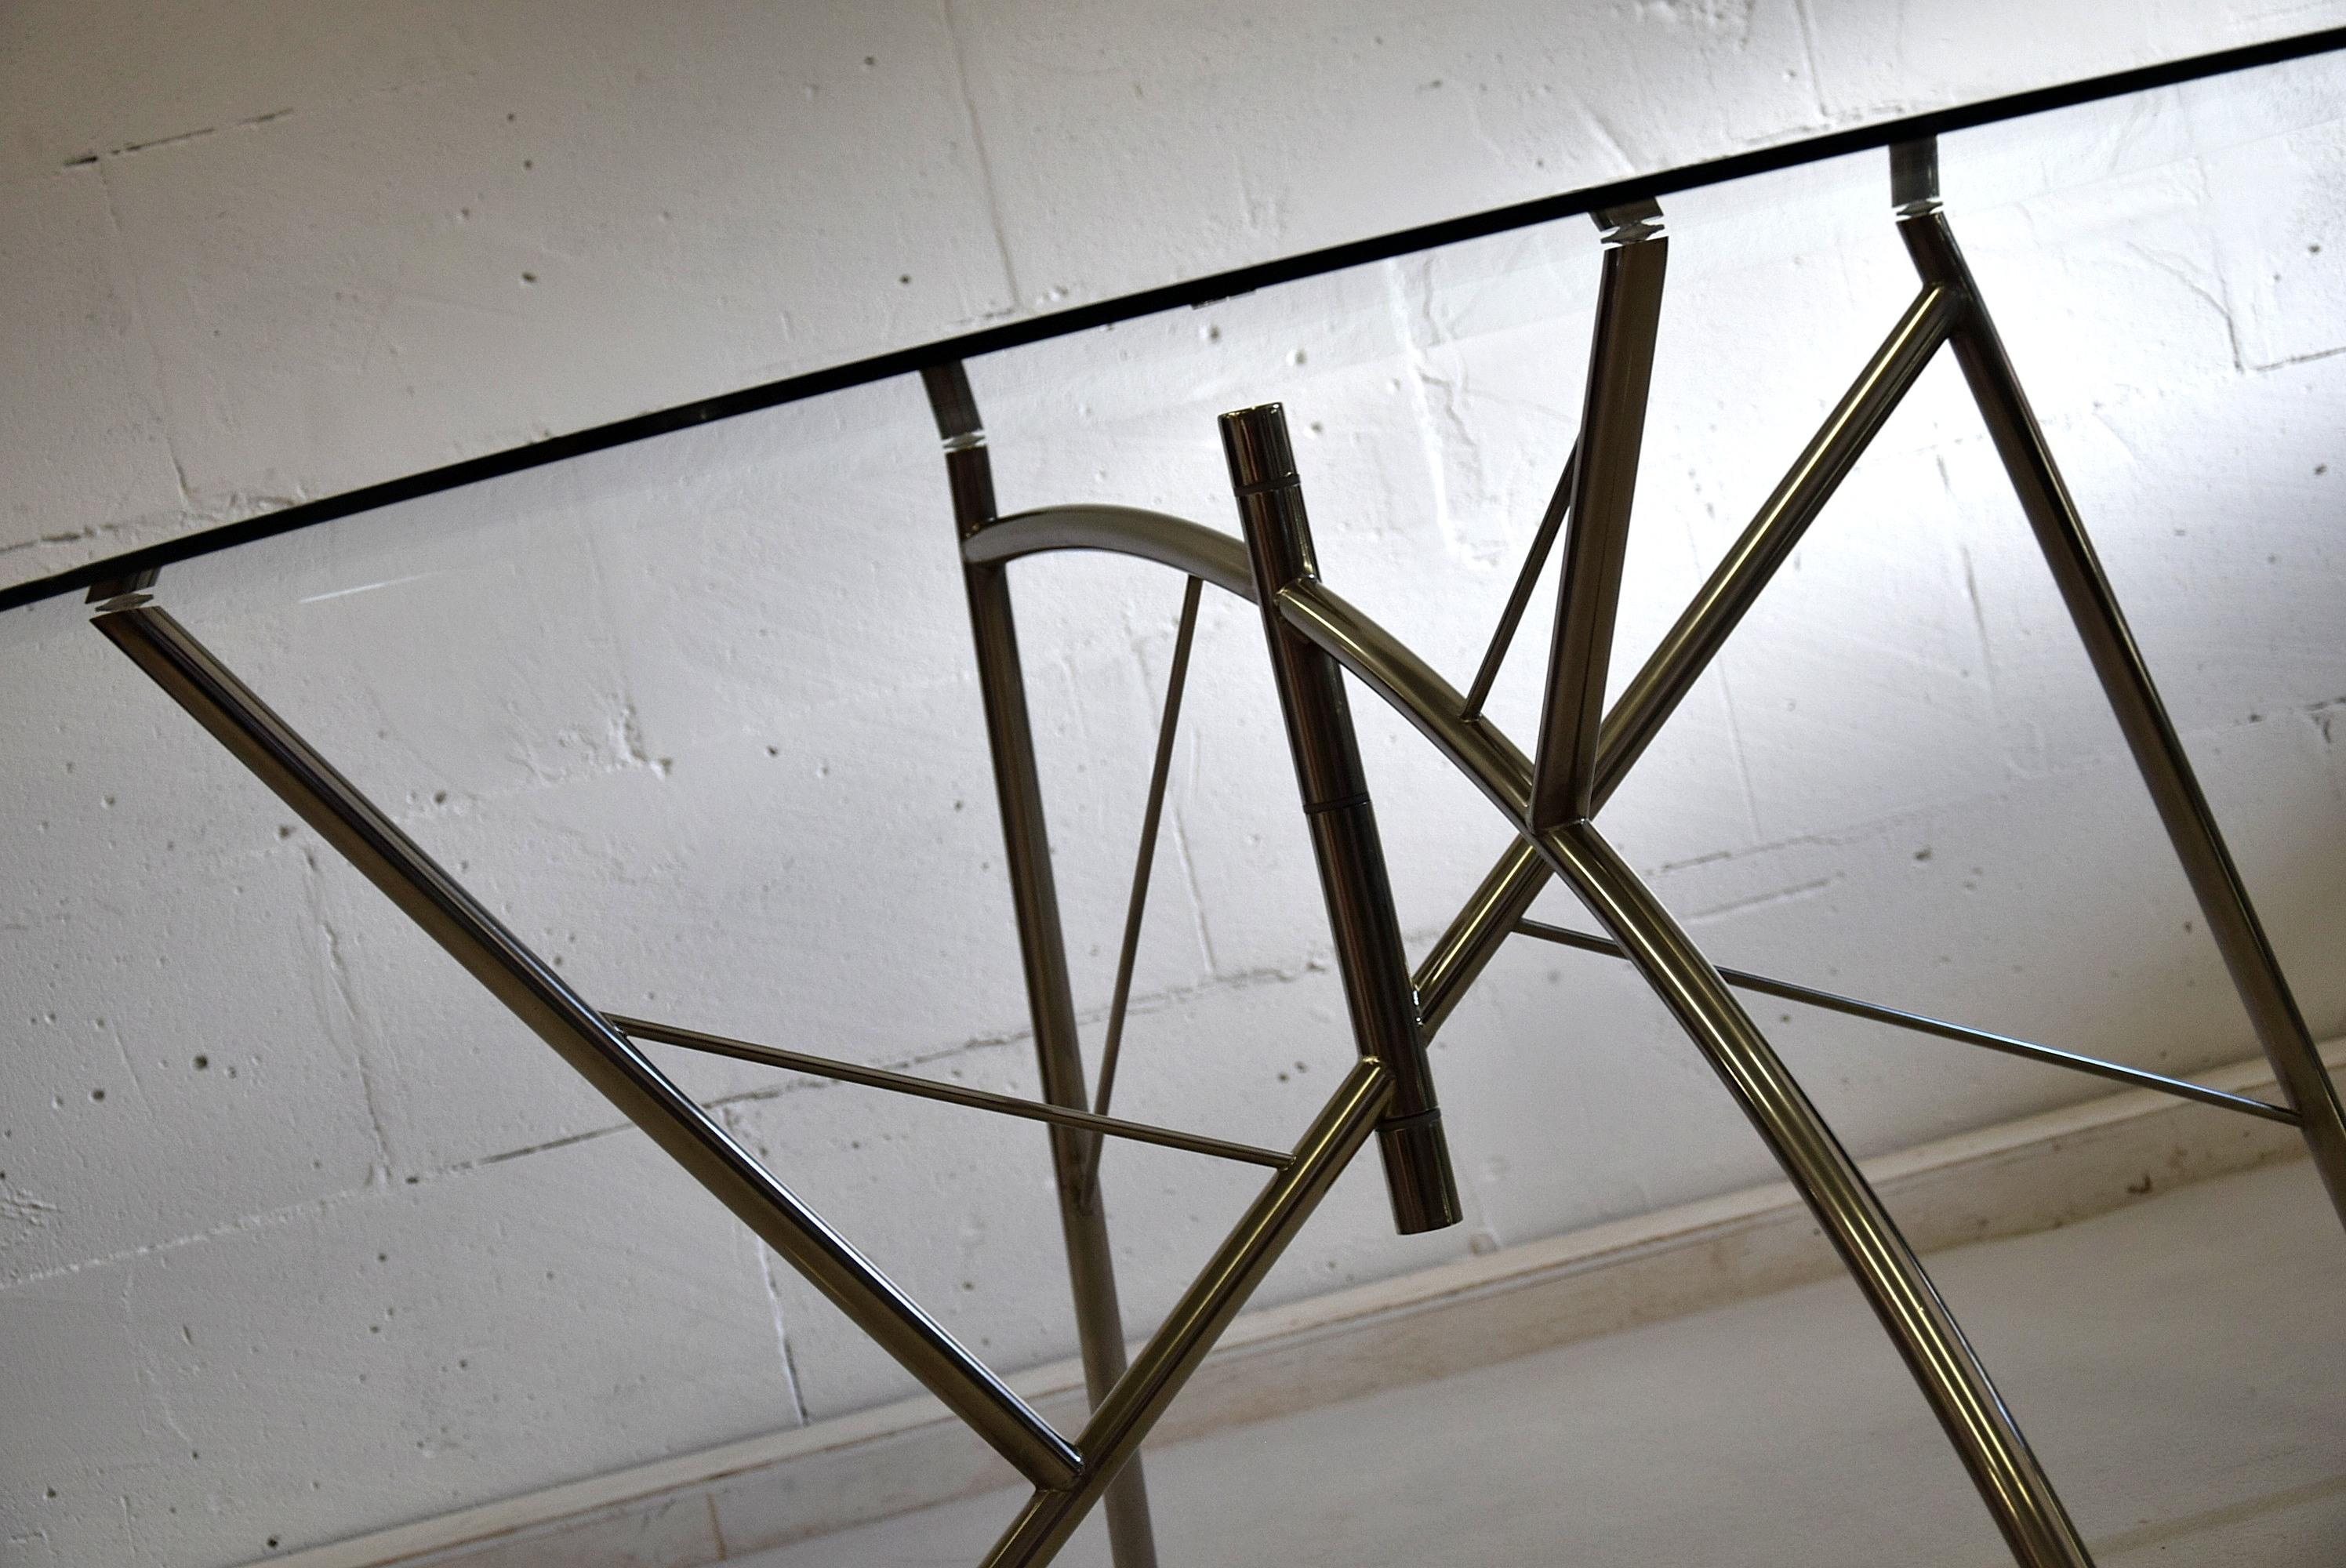 Dole Melipone Esstisch, 1981 von Philippe Starck entworfen und von XO in Frankreich hergestellt, die allererste Ausgabe.
Dieses seltene Stück, das seit langem nicht mehr hergestellt wird, ist in ausgezeichnetem Zustand. Die vernickelte Basis ist